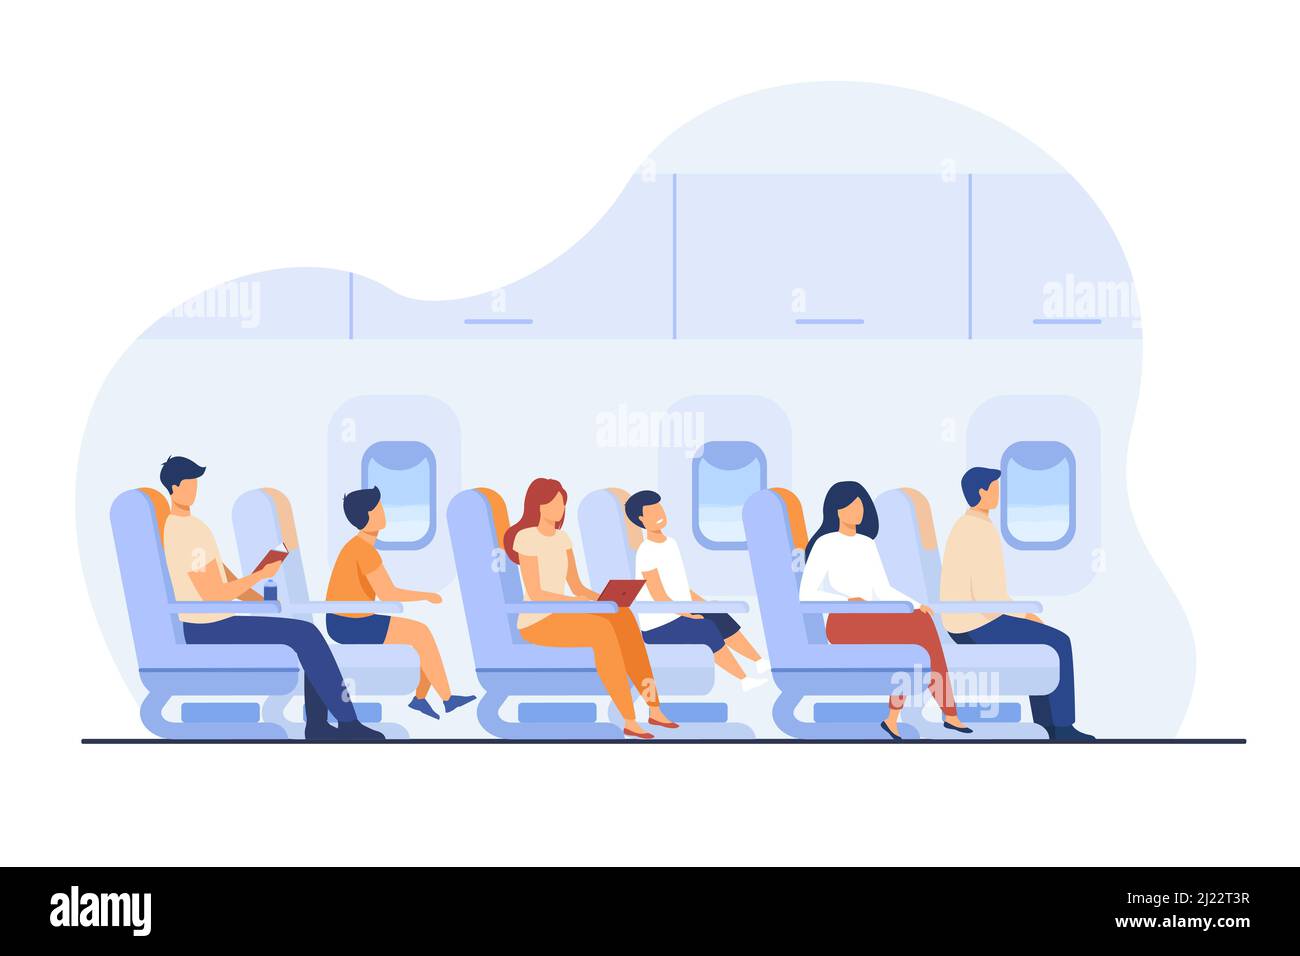 Passagiere, die mit dem Flugzeug reisen, isolierte flache Vektorgrafik. Cartoon-Figuren auf Flugzeug oder Flugzeug Bord. Flugverkehr, Flug und Stock Vektor